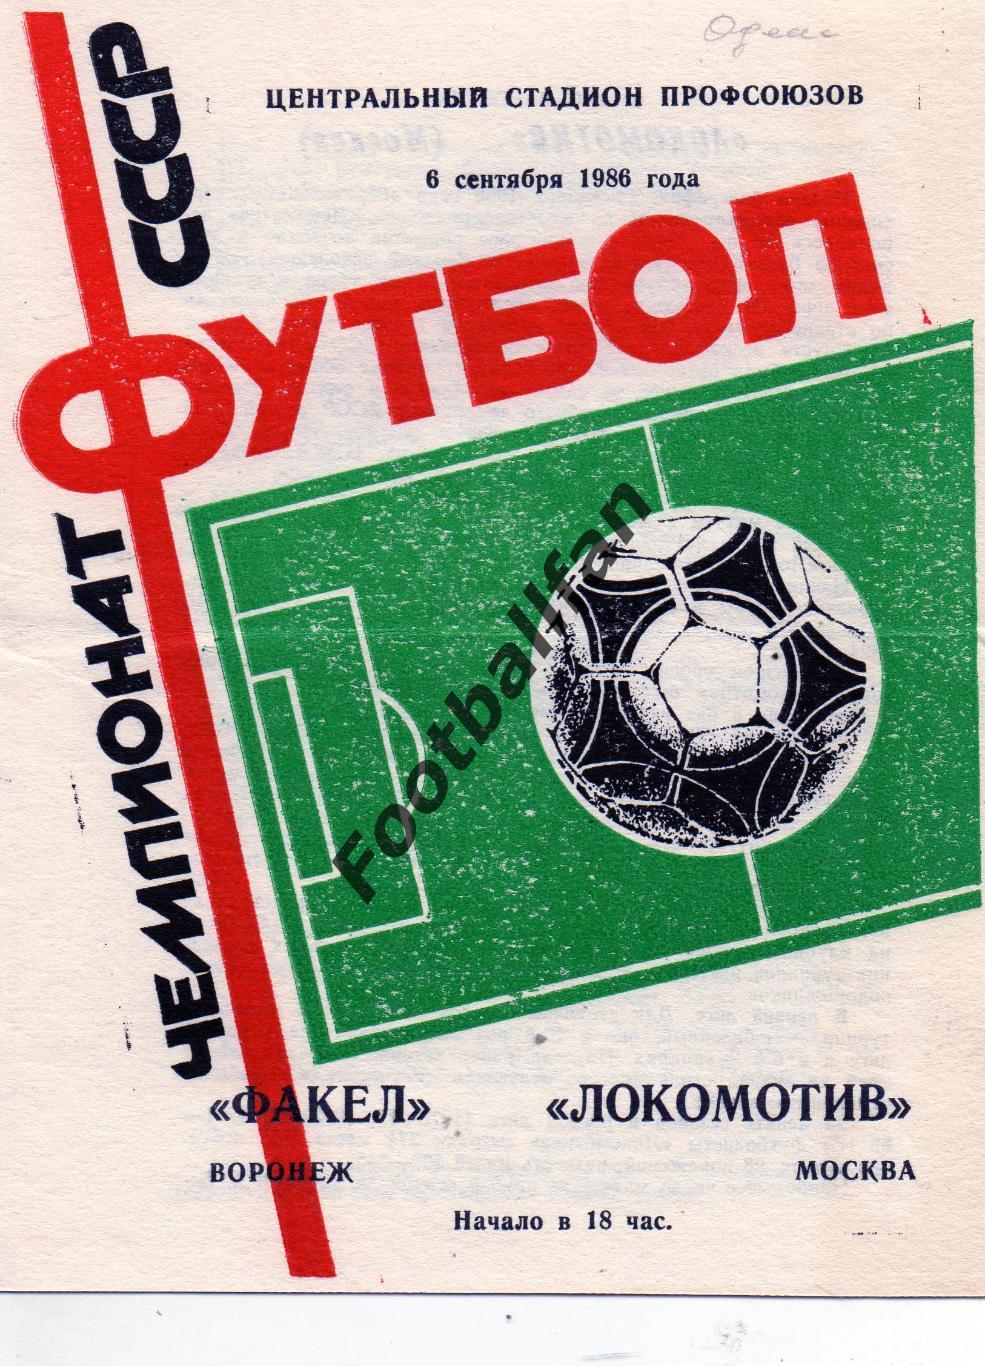 Факел Воронеж - Локомотив Москва 08.09.1986